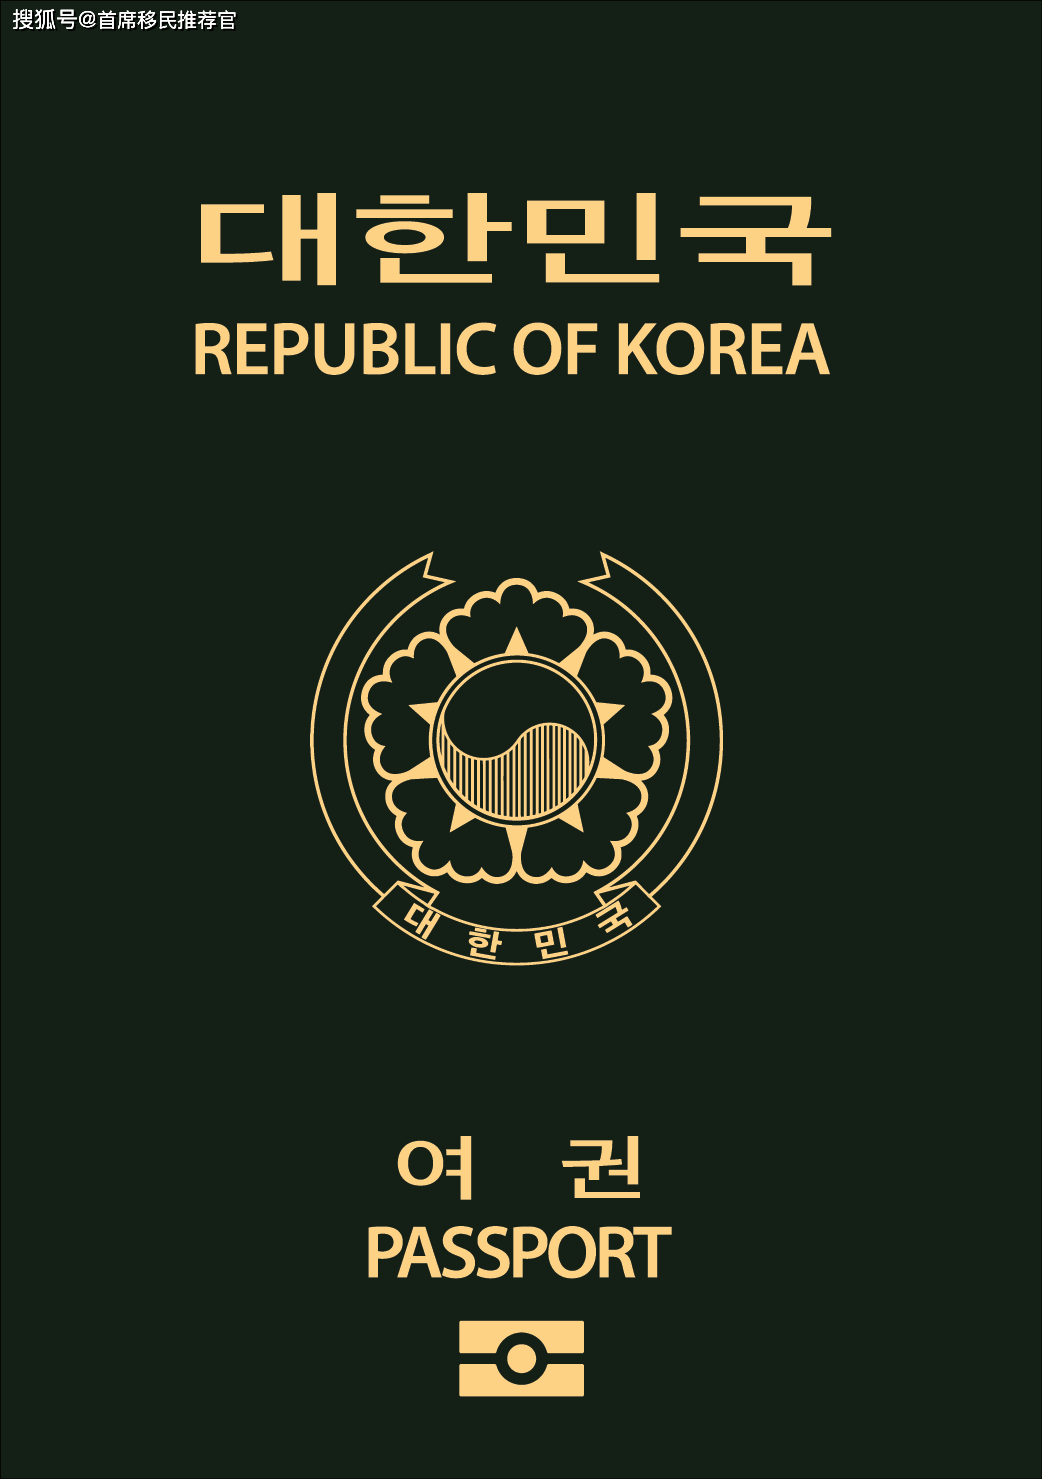 【韩国护照】韩国入籍计划 告诉你申请韩国国籍的几种方式_生活